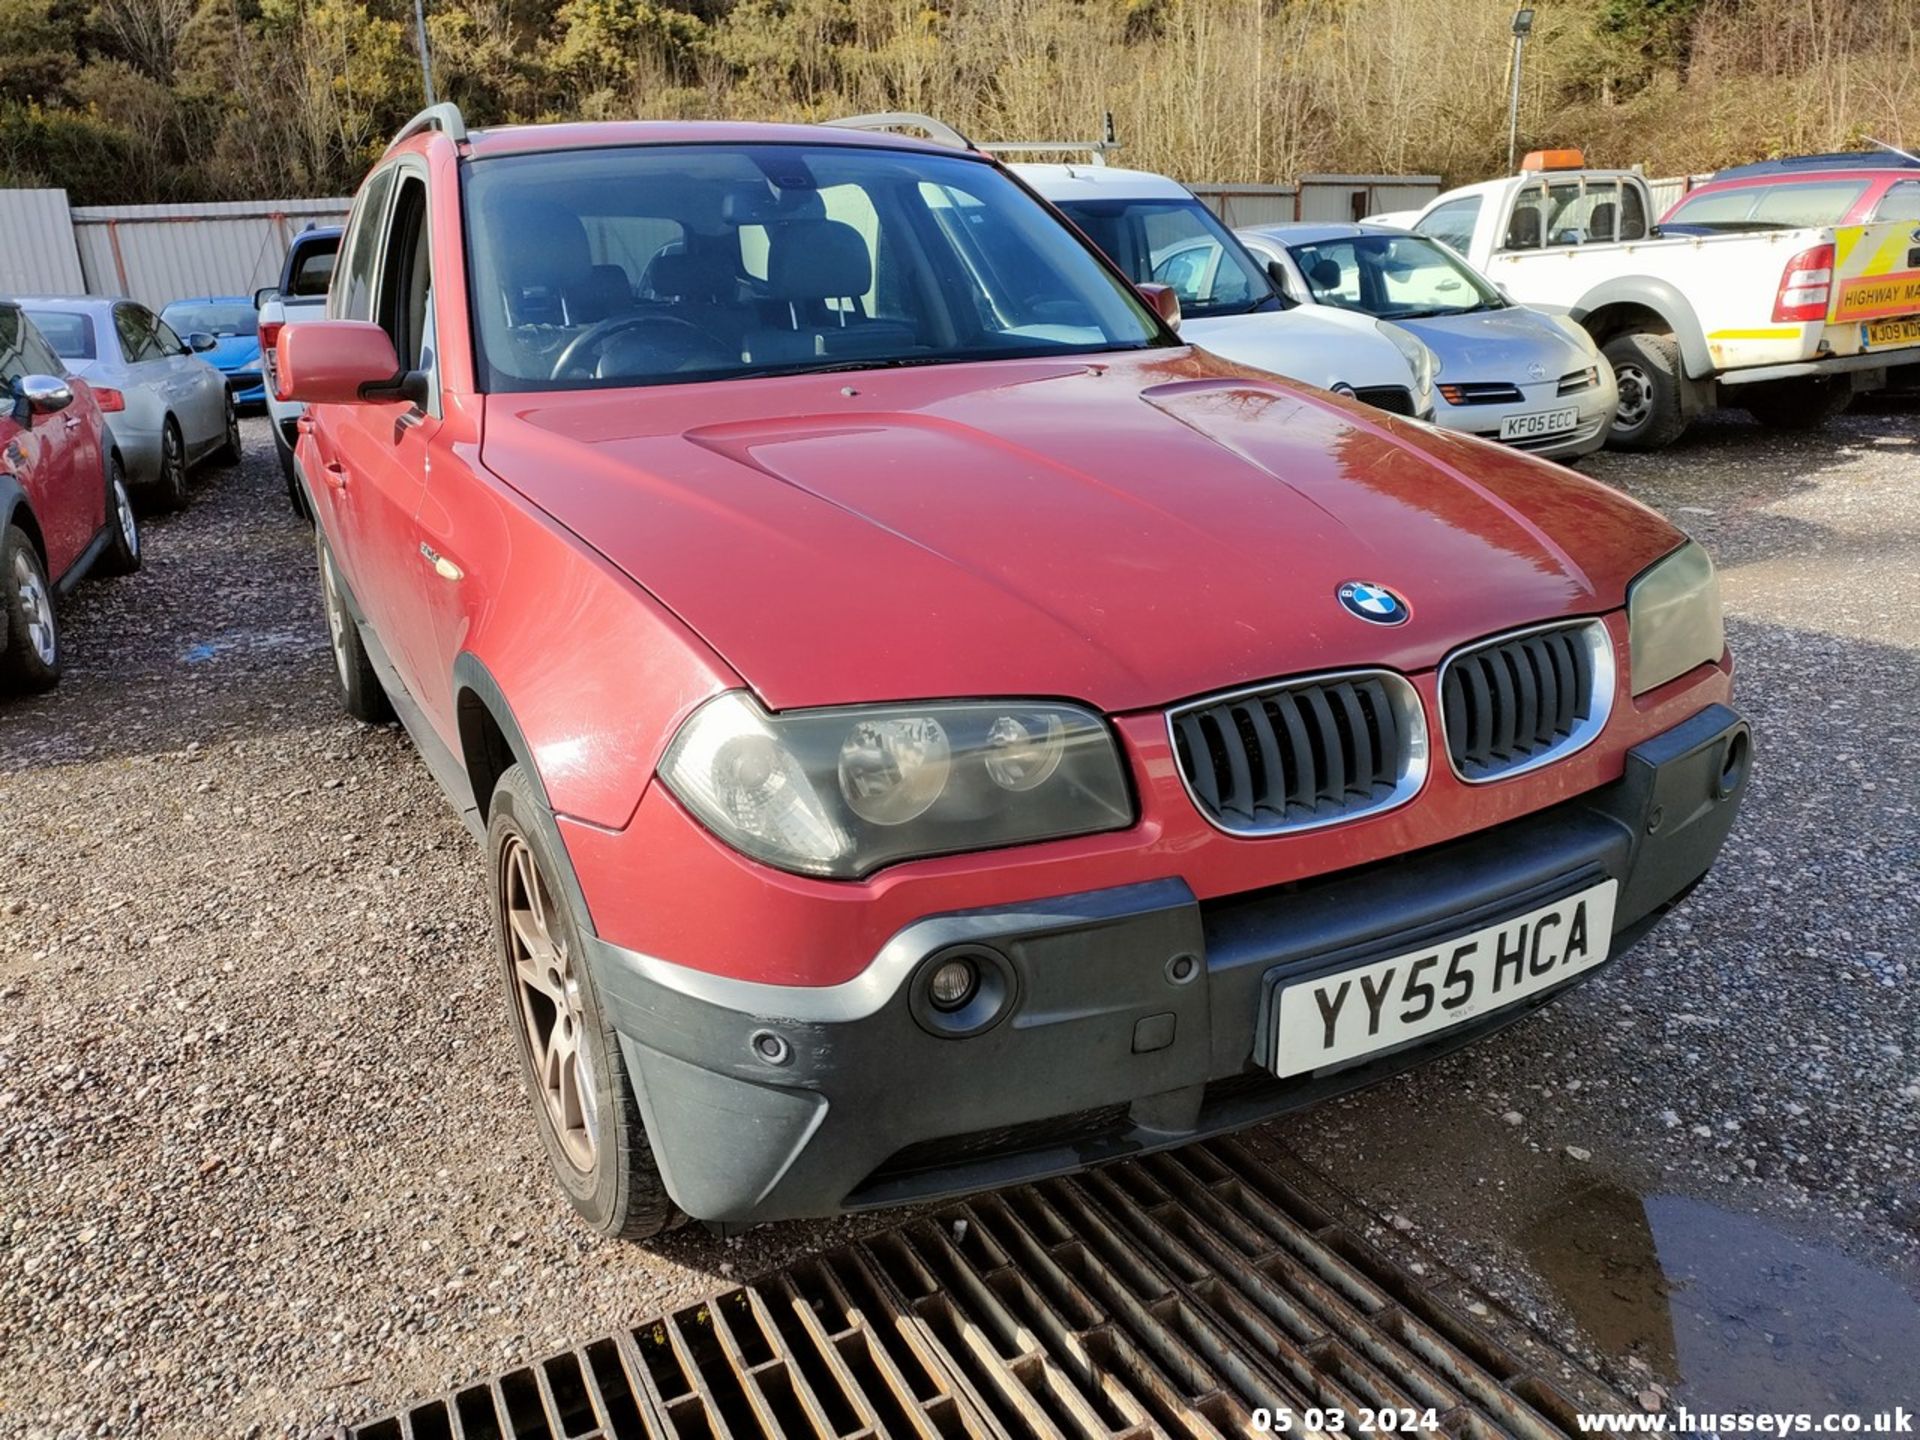 05/55 BMW X3 D SE - 1995cc 5dr Estate (Red, 188k) - Image 7 of 51